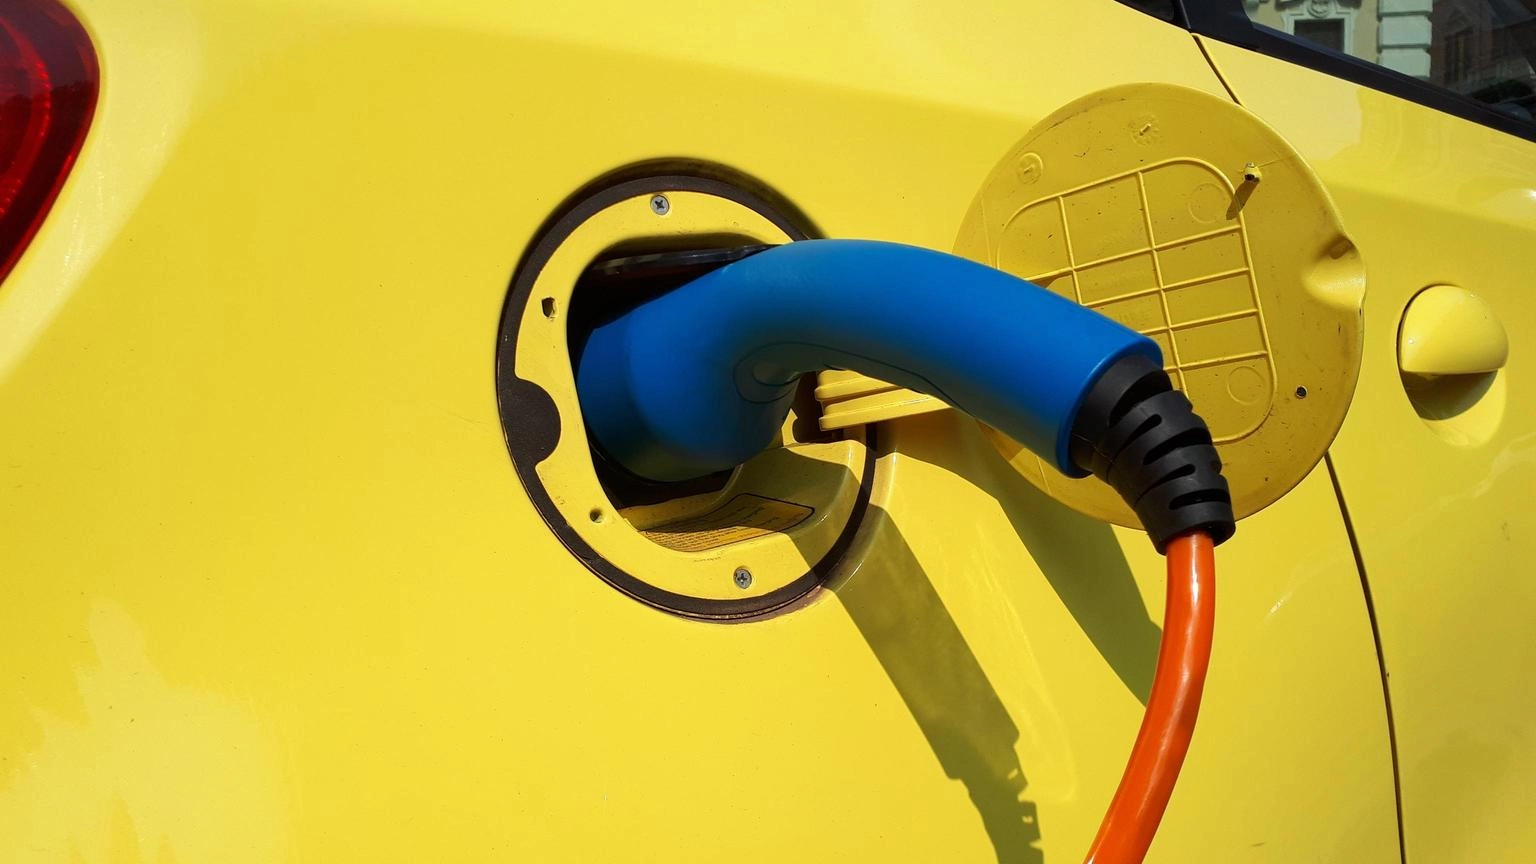 Ecobonus, boom di richieste: il 66,6% dei fondi per le auto elettriche è già stato usato